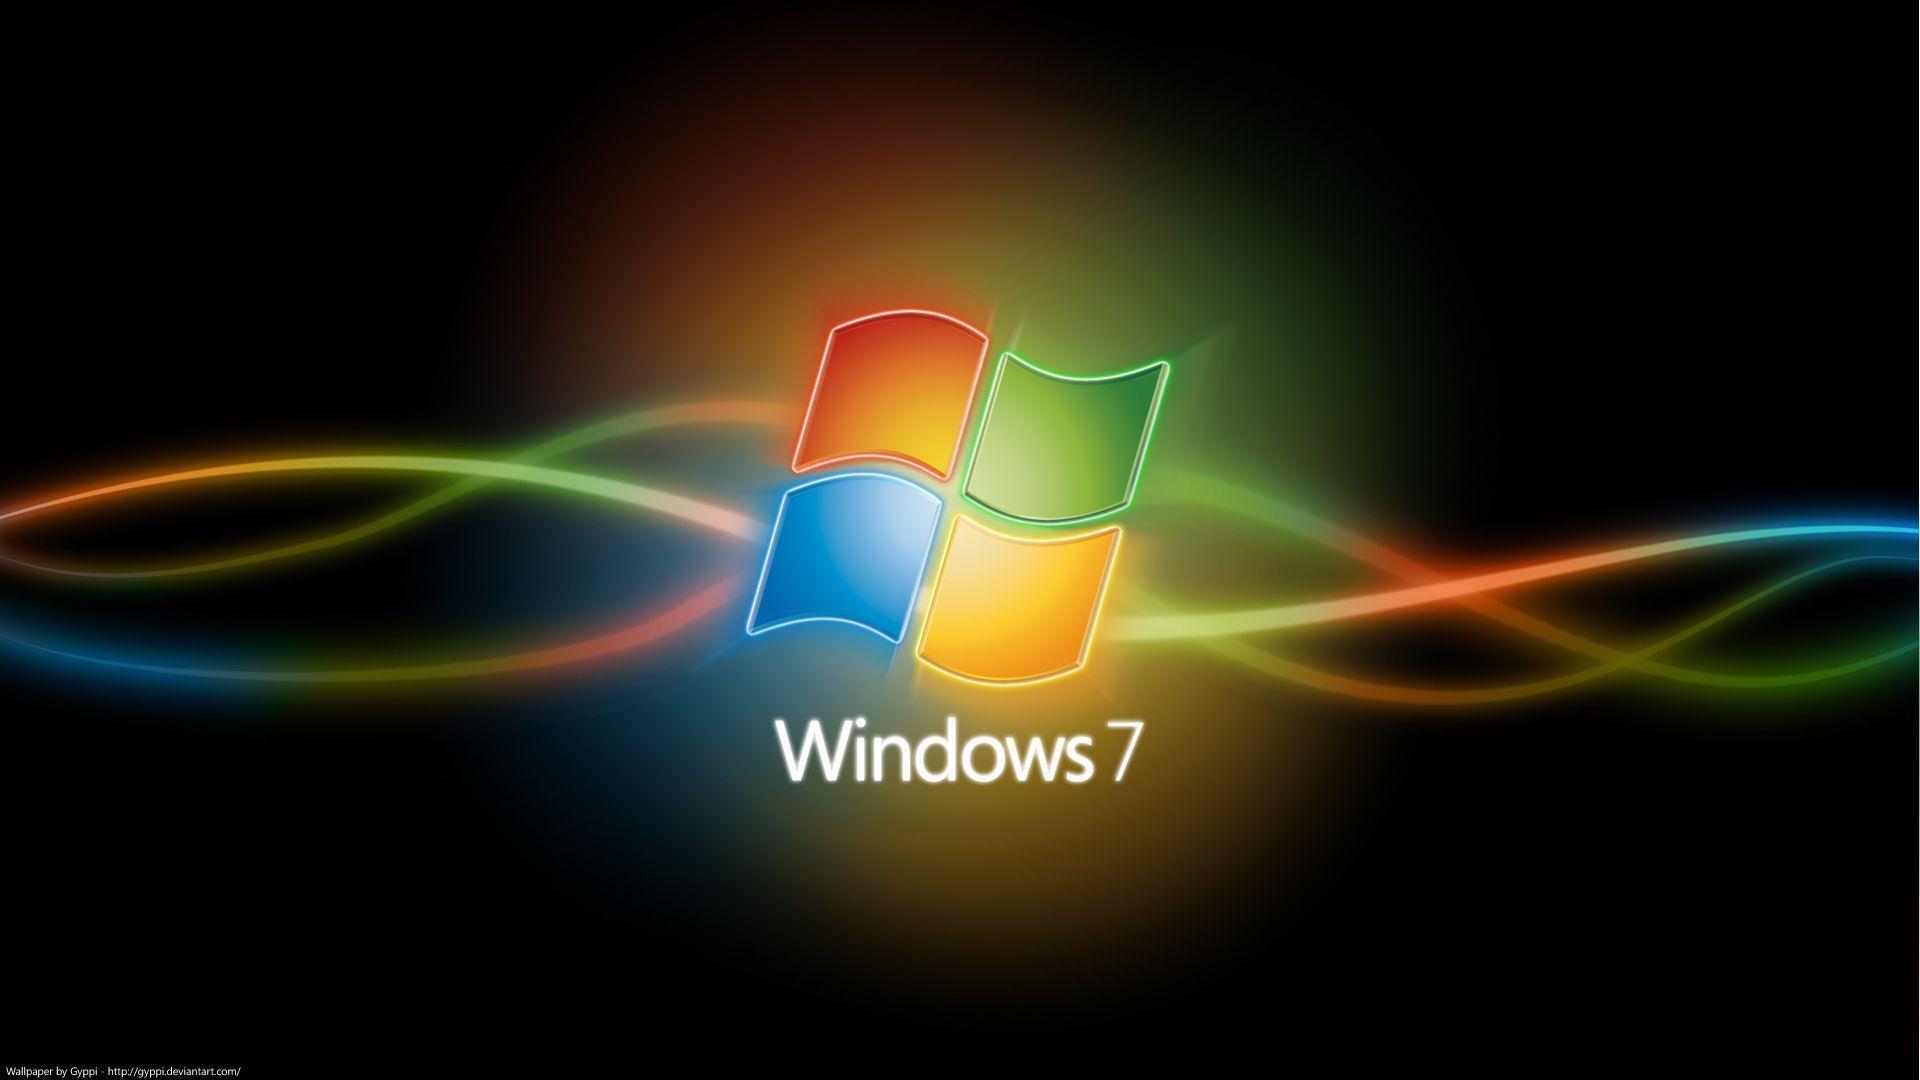 Windows 7 Computer Wallpapers, Desktop Backgrounds 1920x1080 Id: 75091